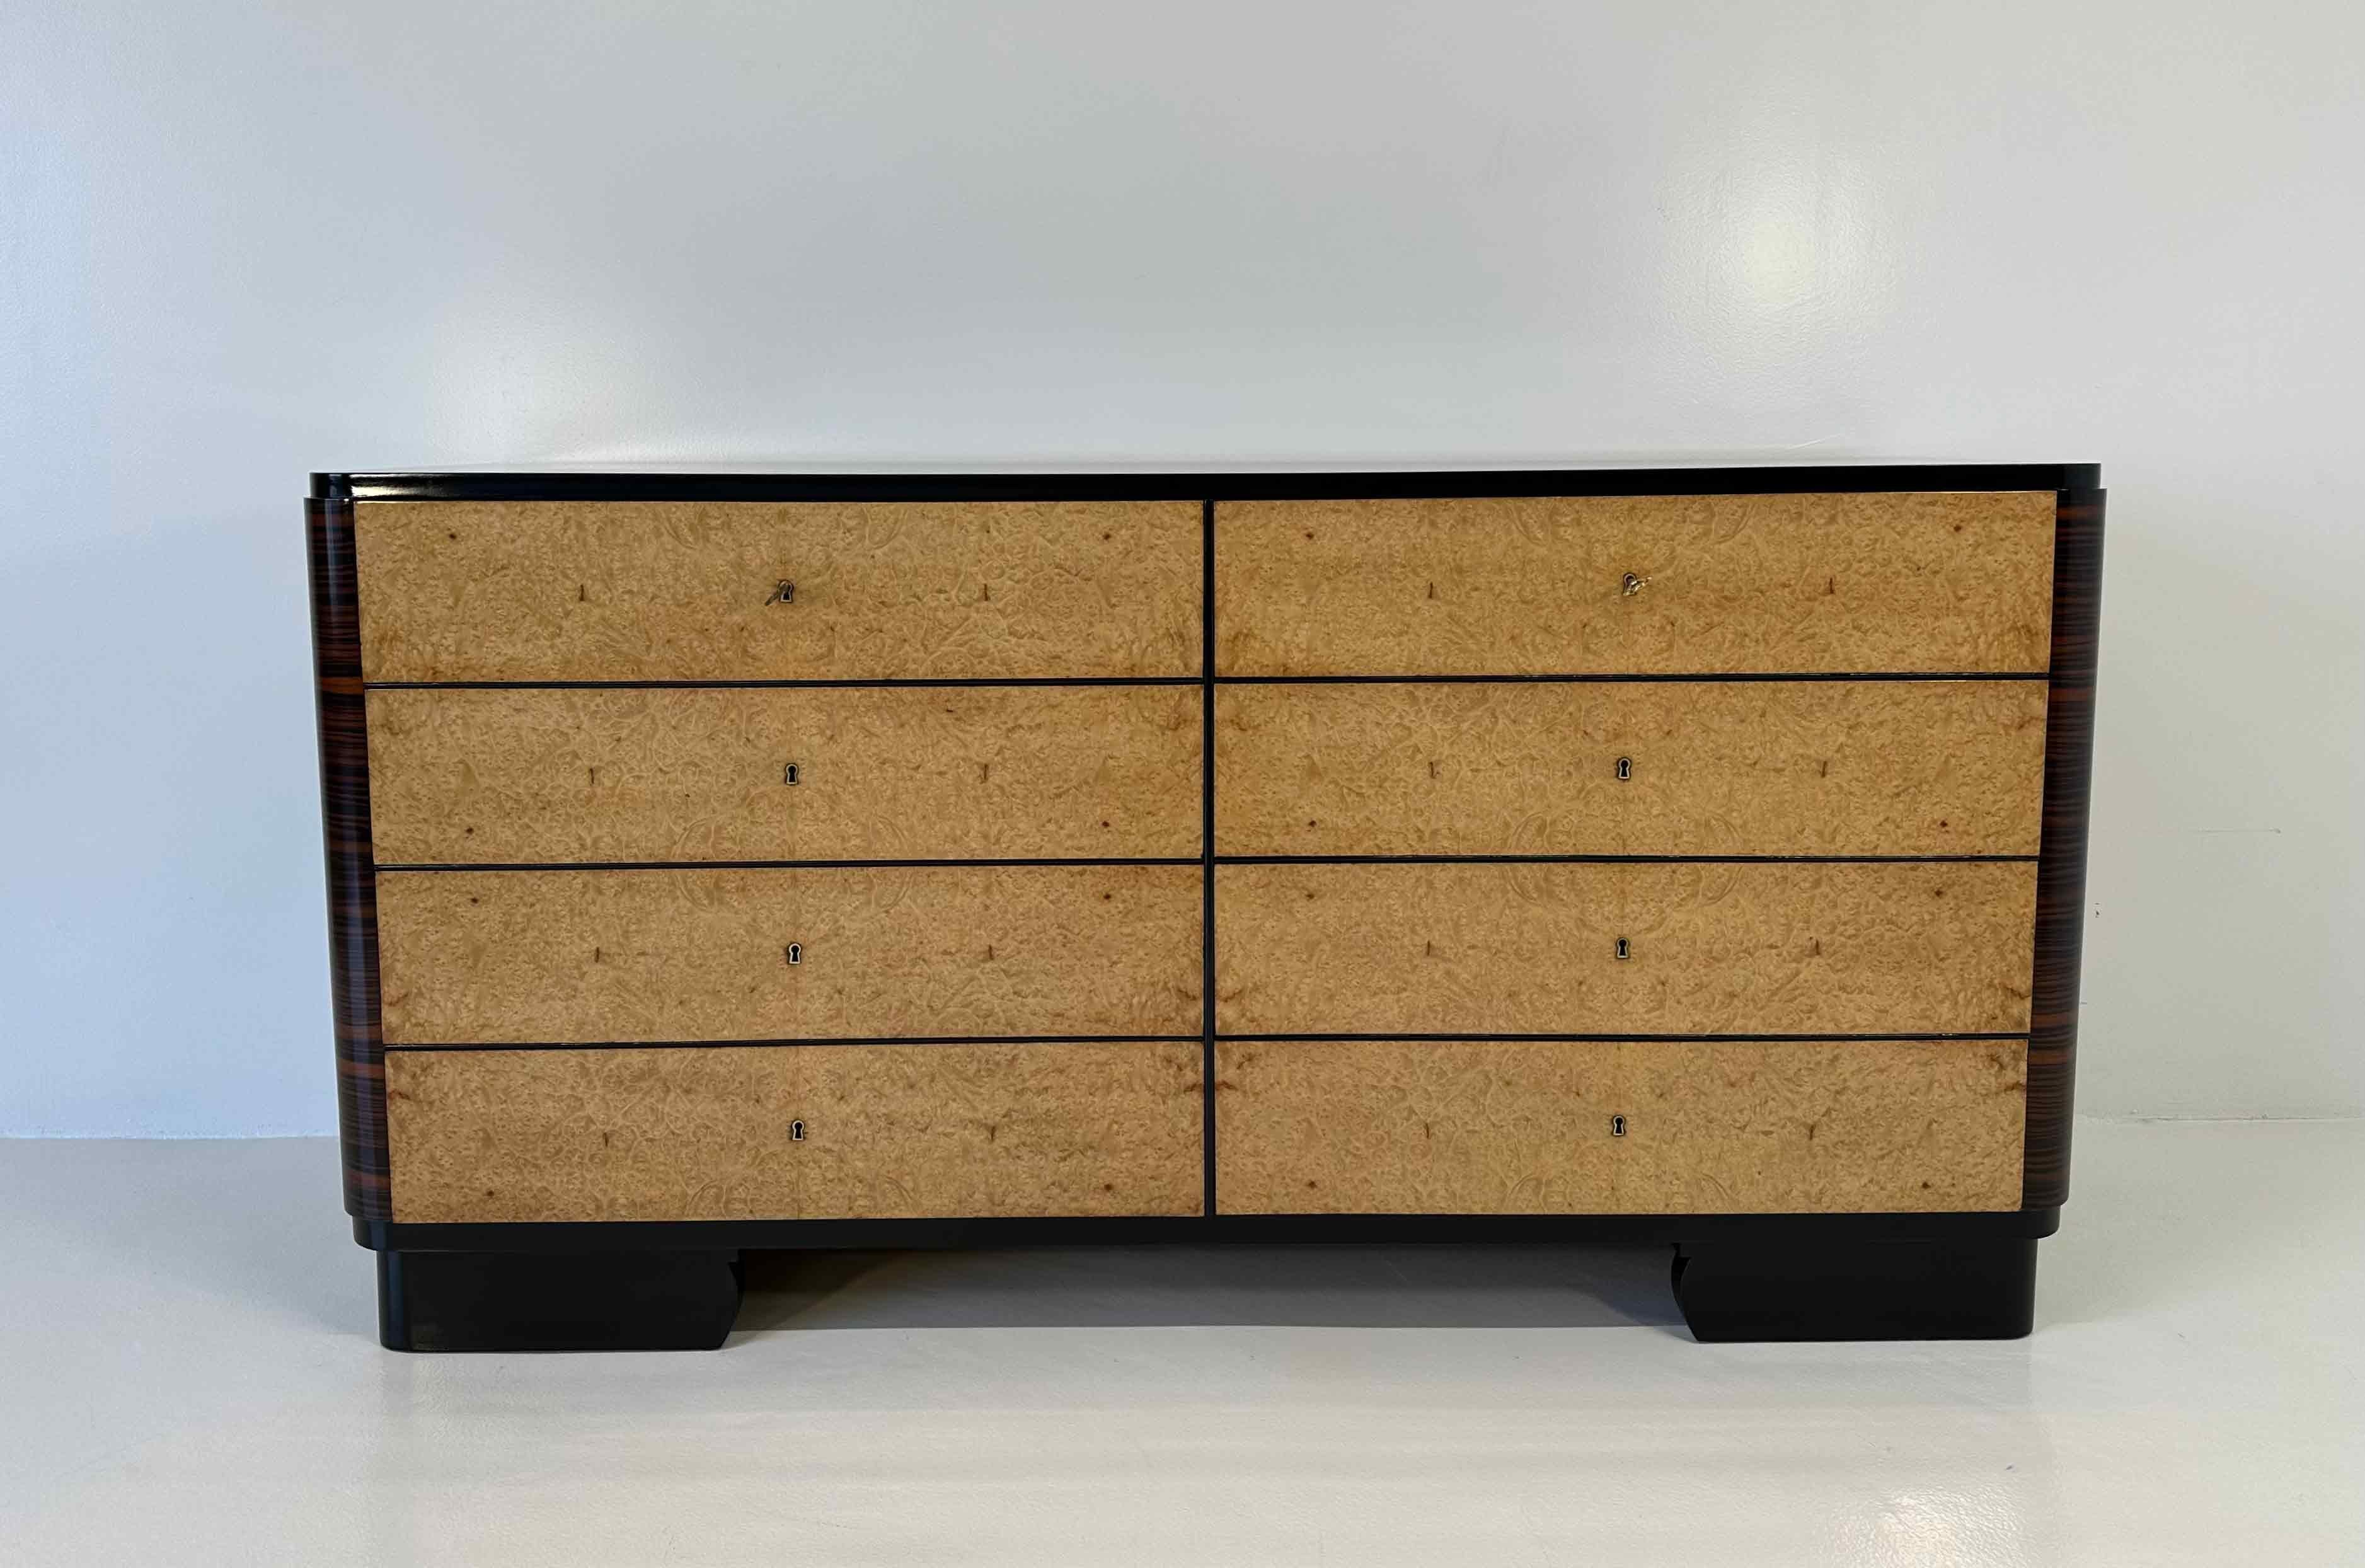 Diese elegante Art-Déco-Kommode wurde in den 1930er Jahren in Italien hergestellt. 
Die Schubladen sind aus Thuja-Birke, während die Platte und die Seitenteile aus Ebenholz-Makassar gefertigt sind. Die Details, wie das Profil der Platte, die